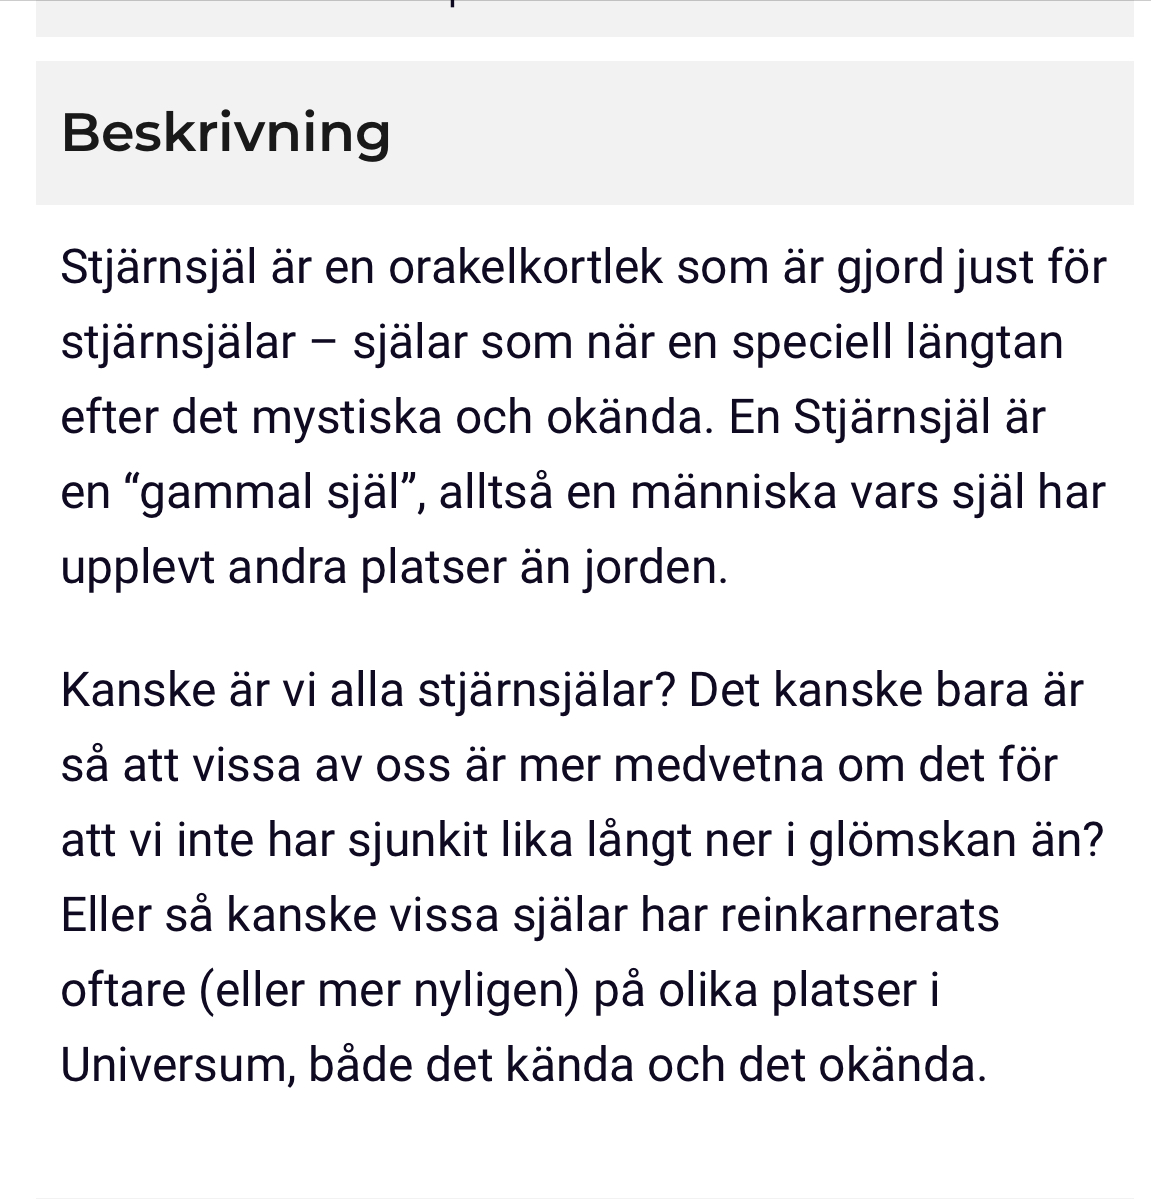 Stjärnsjäl Orakelkort (svensk text)